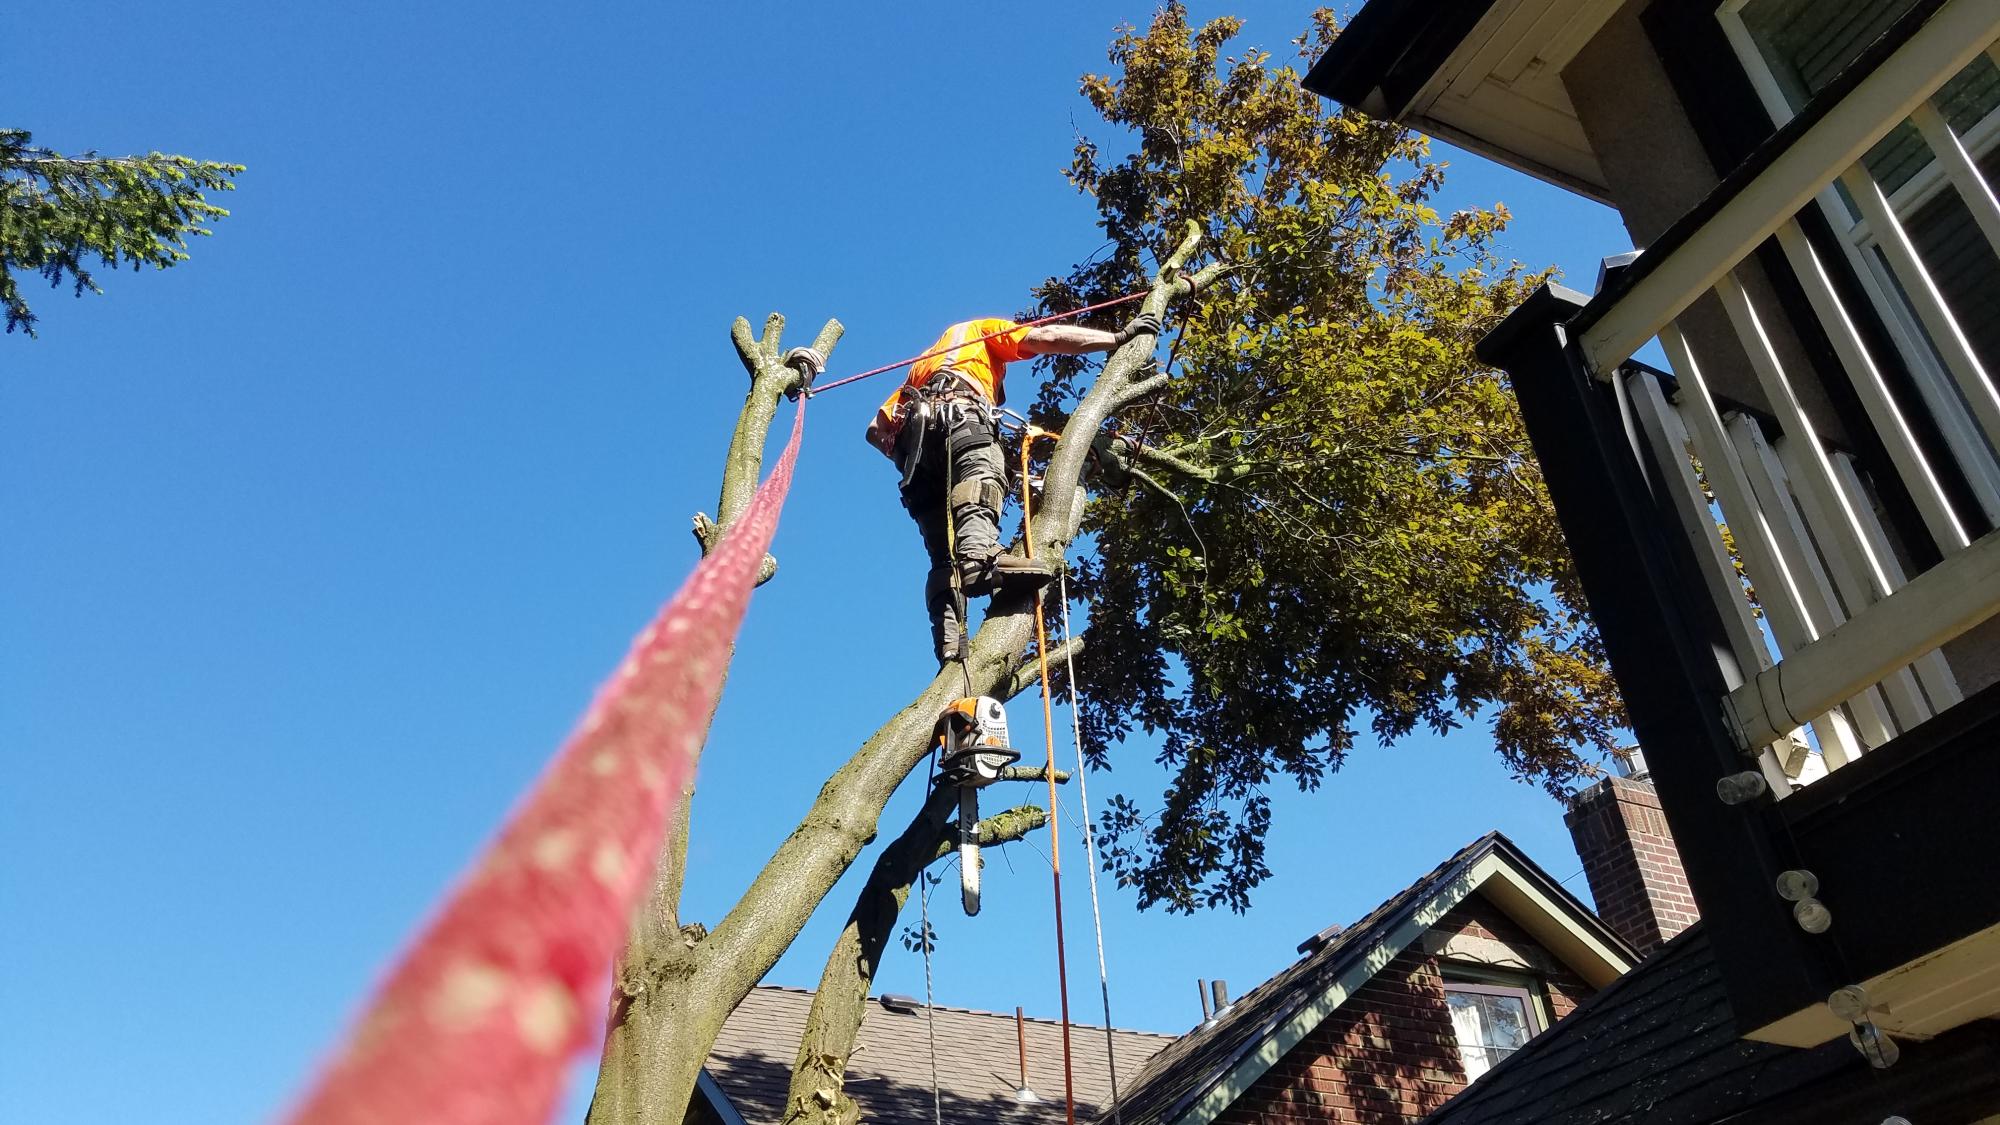 Tree Services in Everett, WA